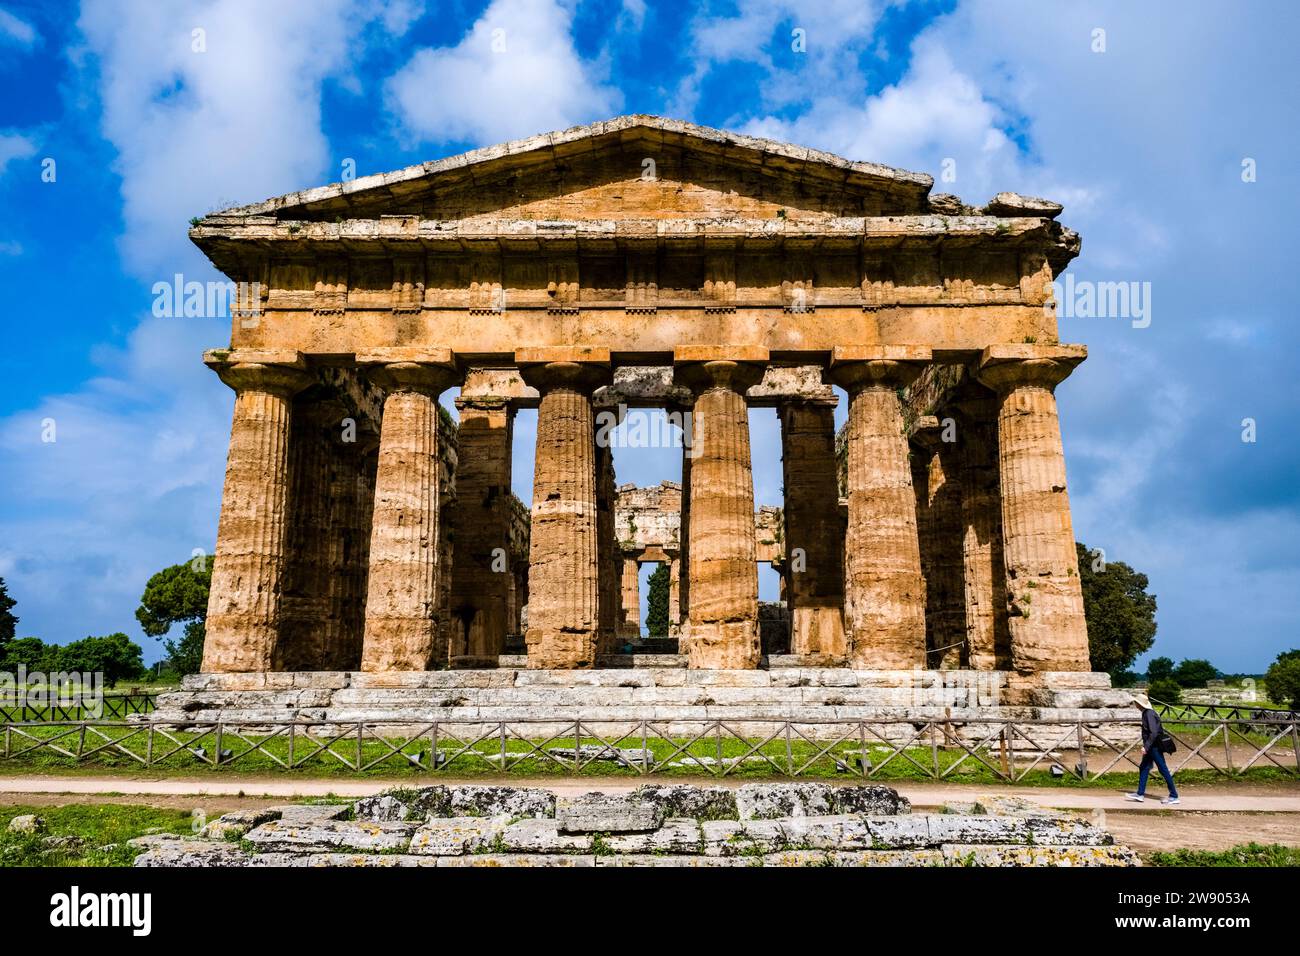 Zweiter Tempel von Hera, der zu den Ruinen von Paestum gehört, einer wichtigen antiken griechischen Stadt an der Küste des Tyrrhenischen Meeres. Stockfoto